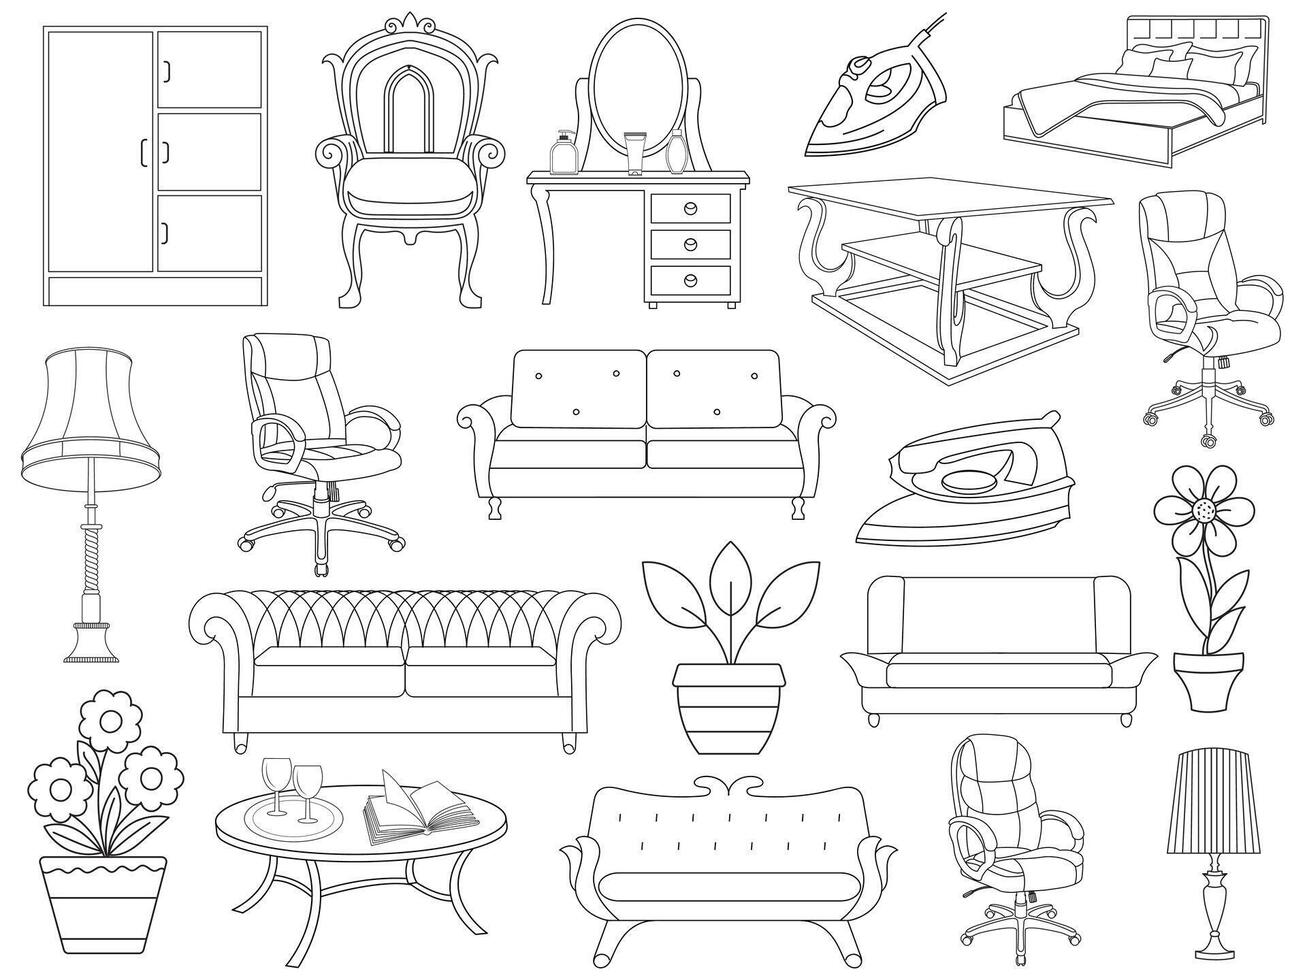 samling av elegant modern möbel och Hem interiör dekorationer av trendig. kök, sovrum, soffa tabell, bokhylla garderob, stol, madrass, lampor, möbel vektor illustration uppsättning.